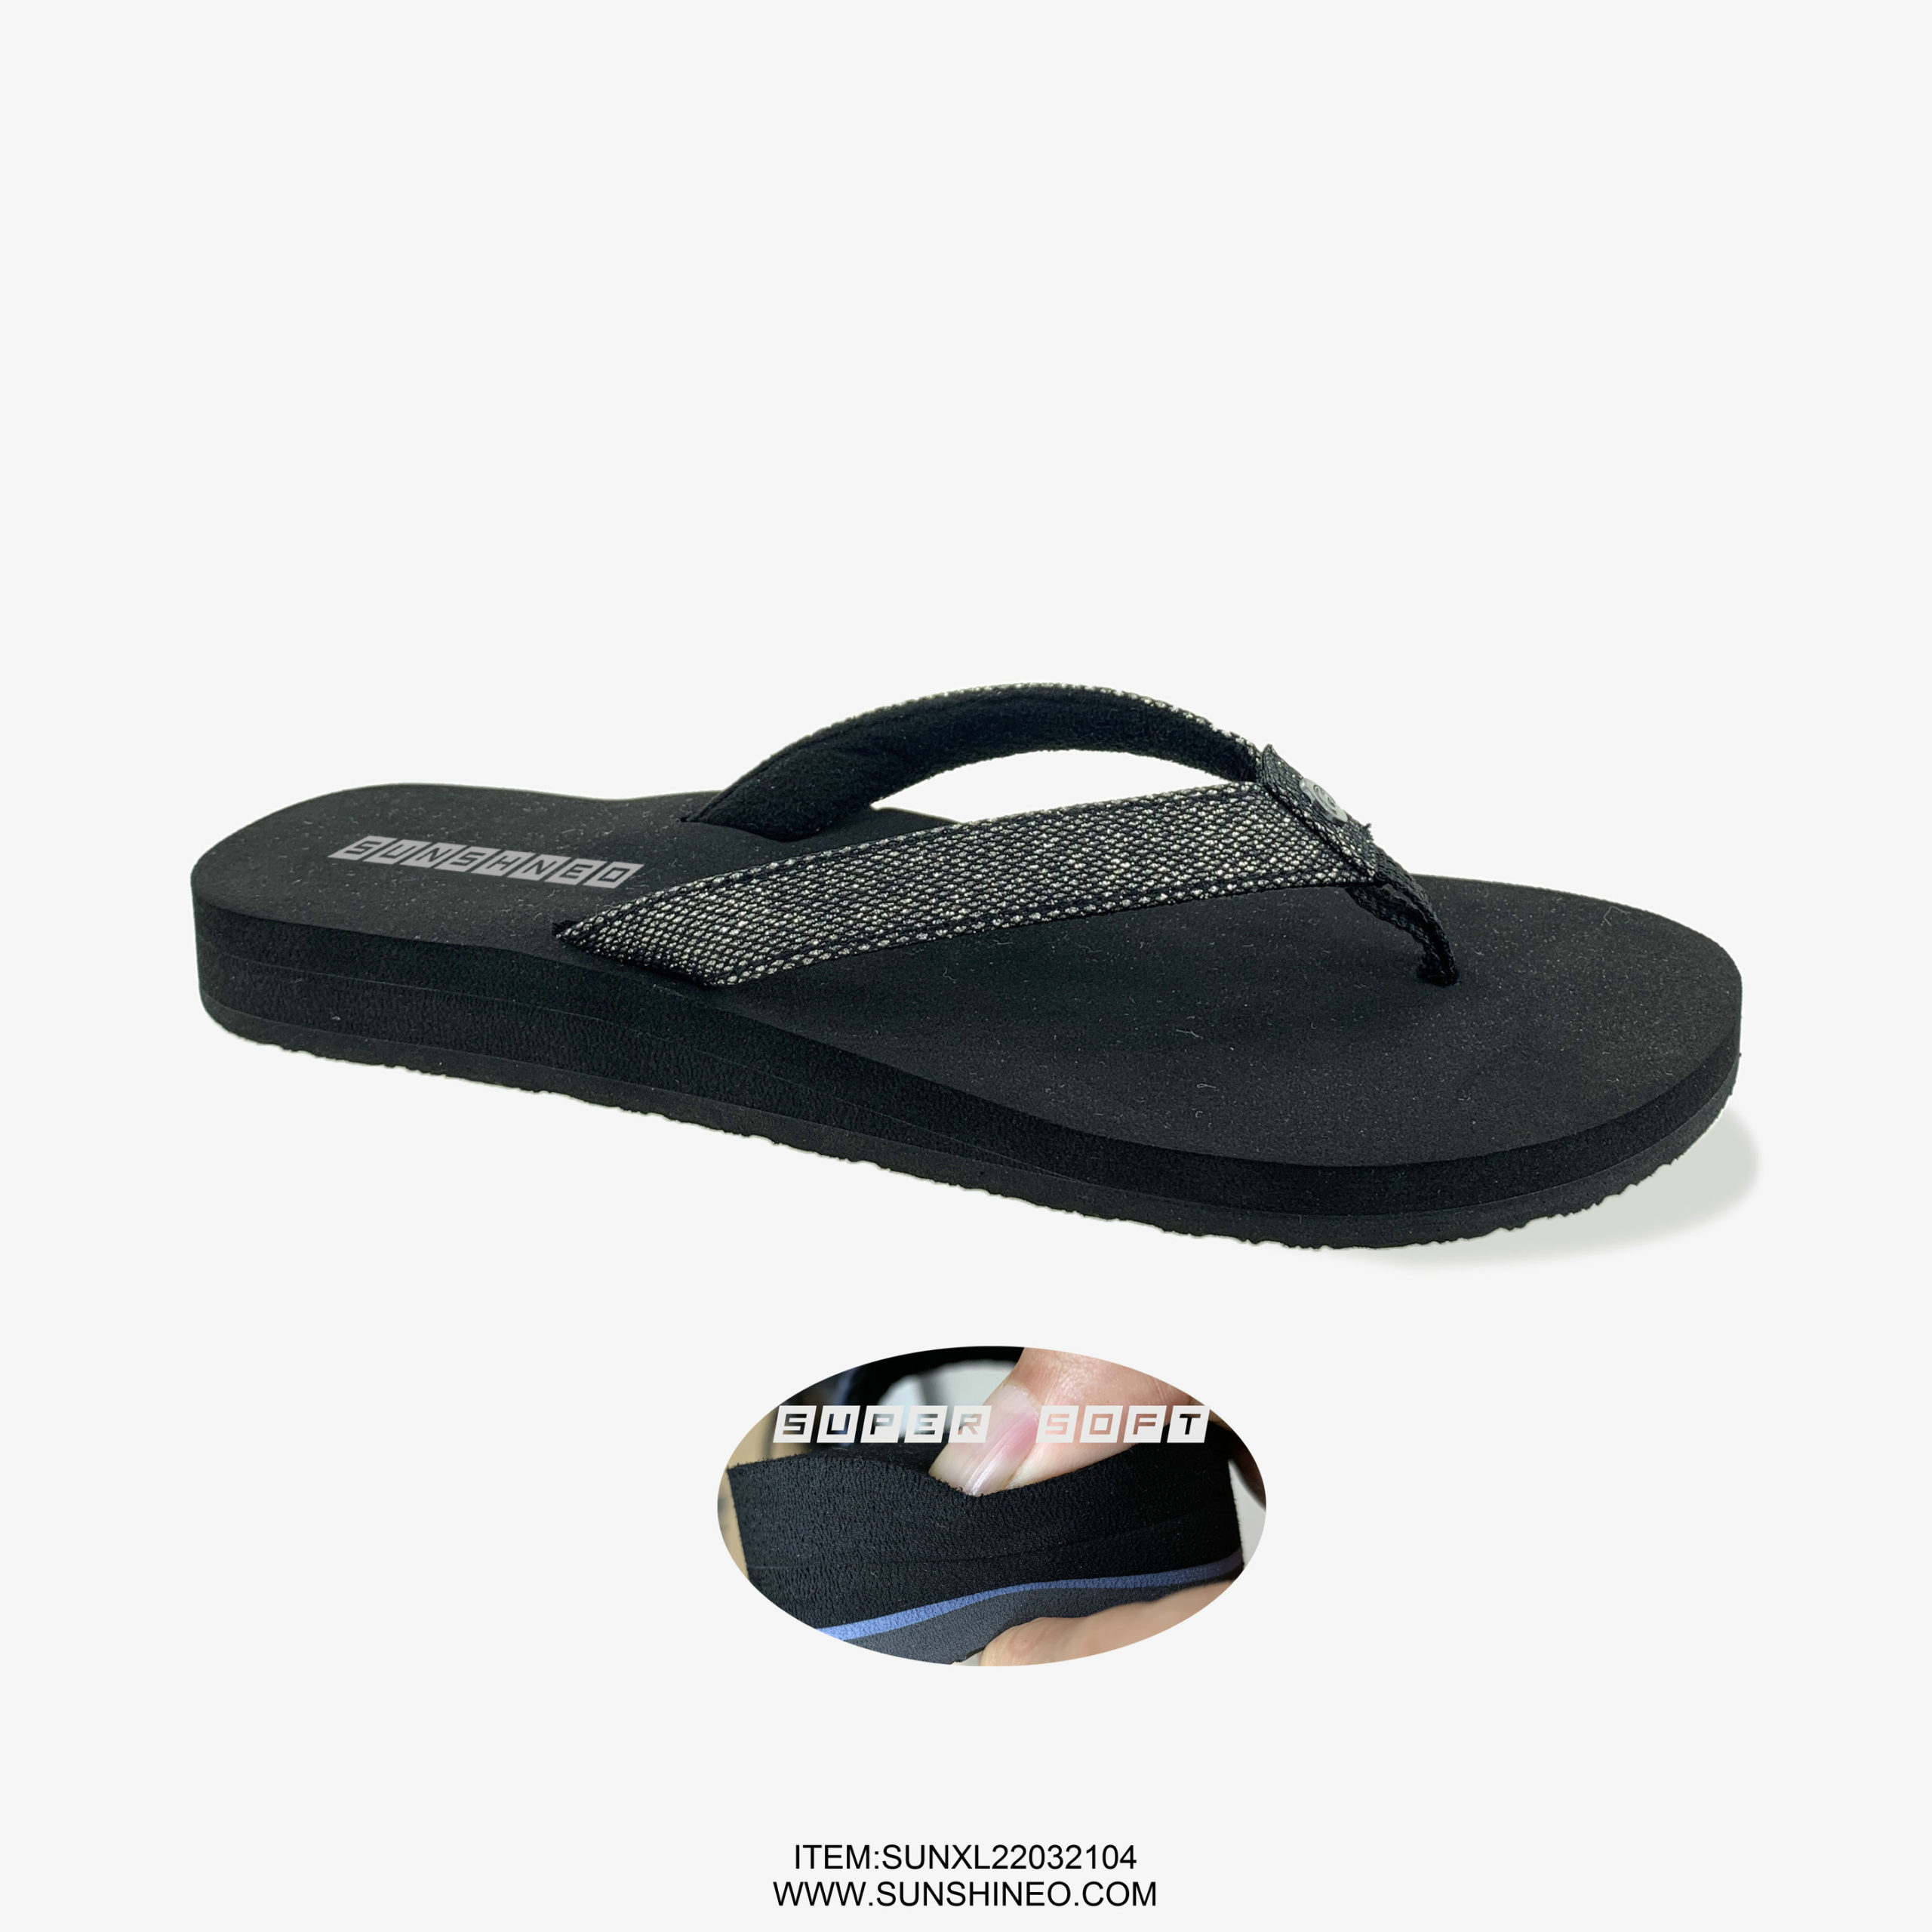 SUNXL22032104 flip flop sandals